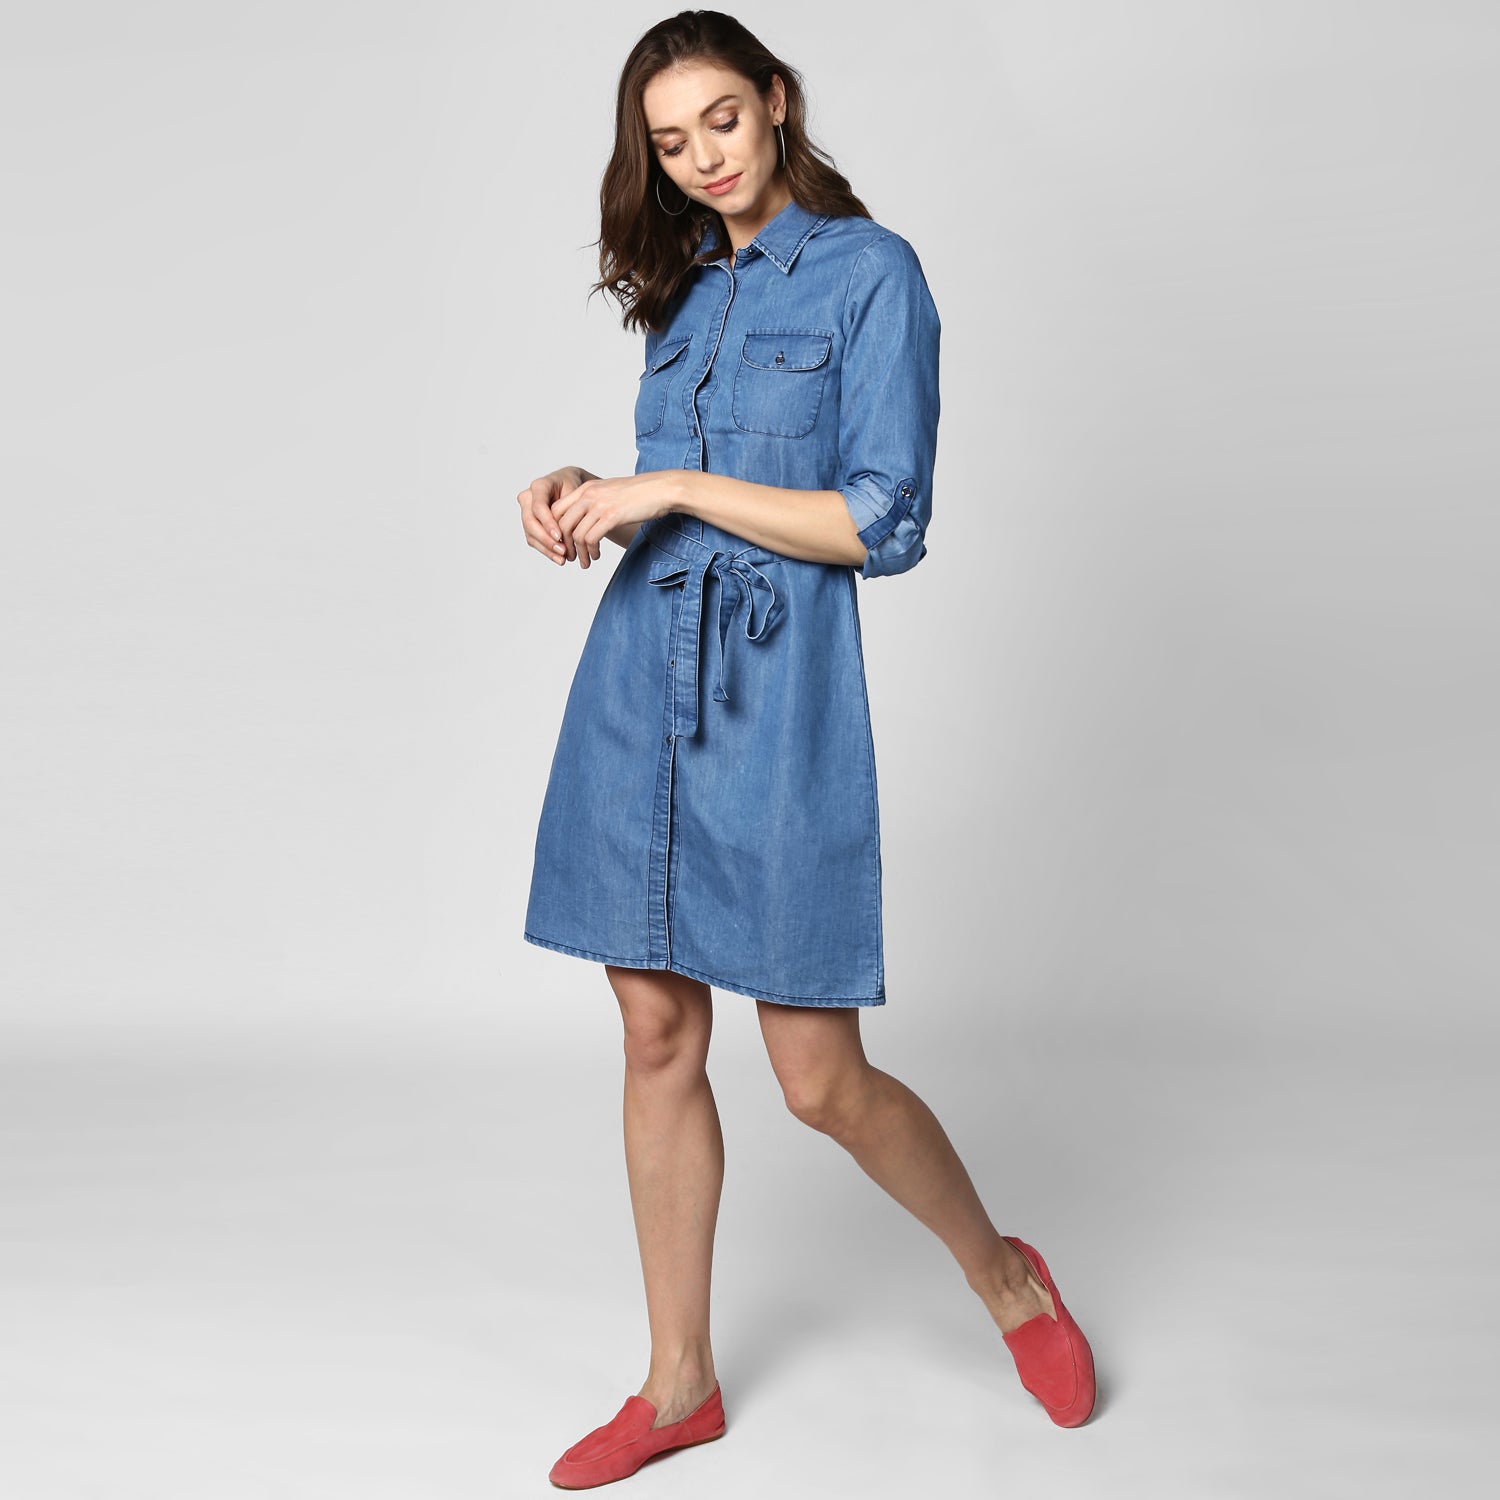 Women's Blue Denim Double Pocket Double Flap Dress - StyleStone